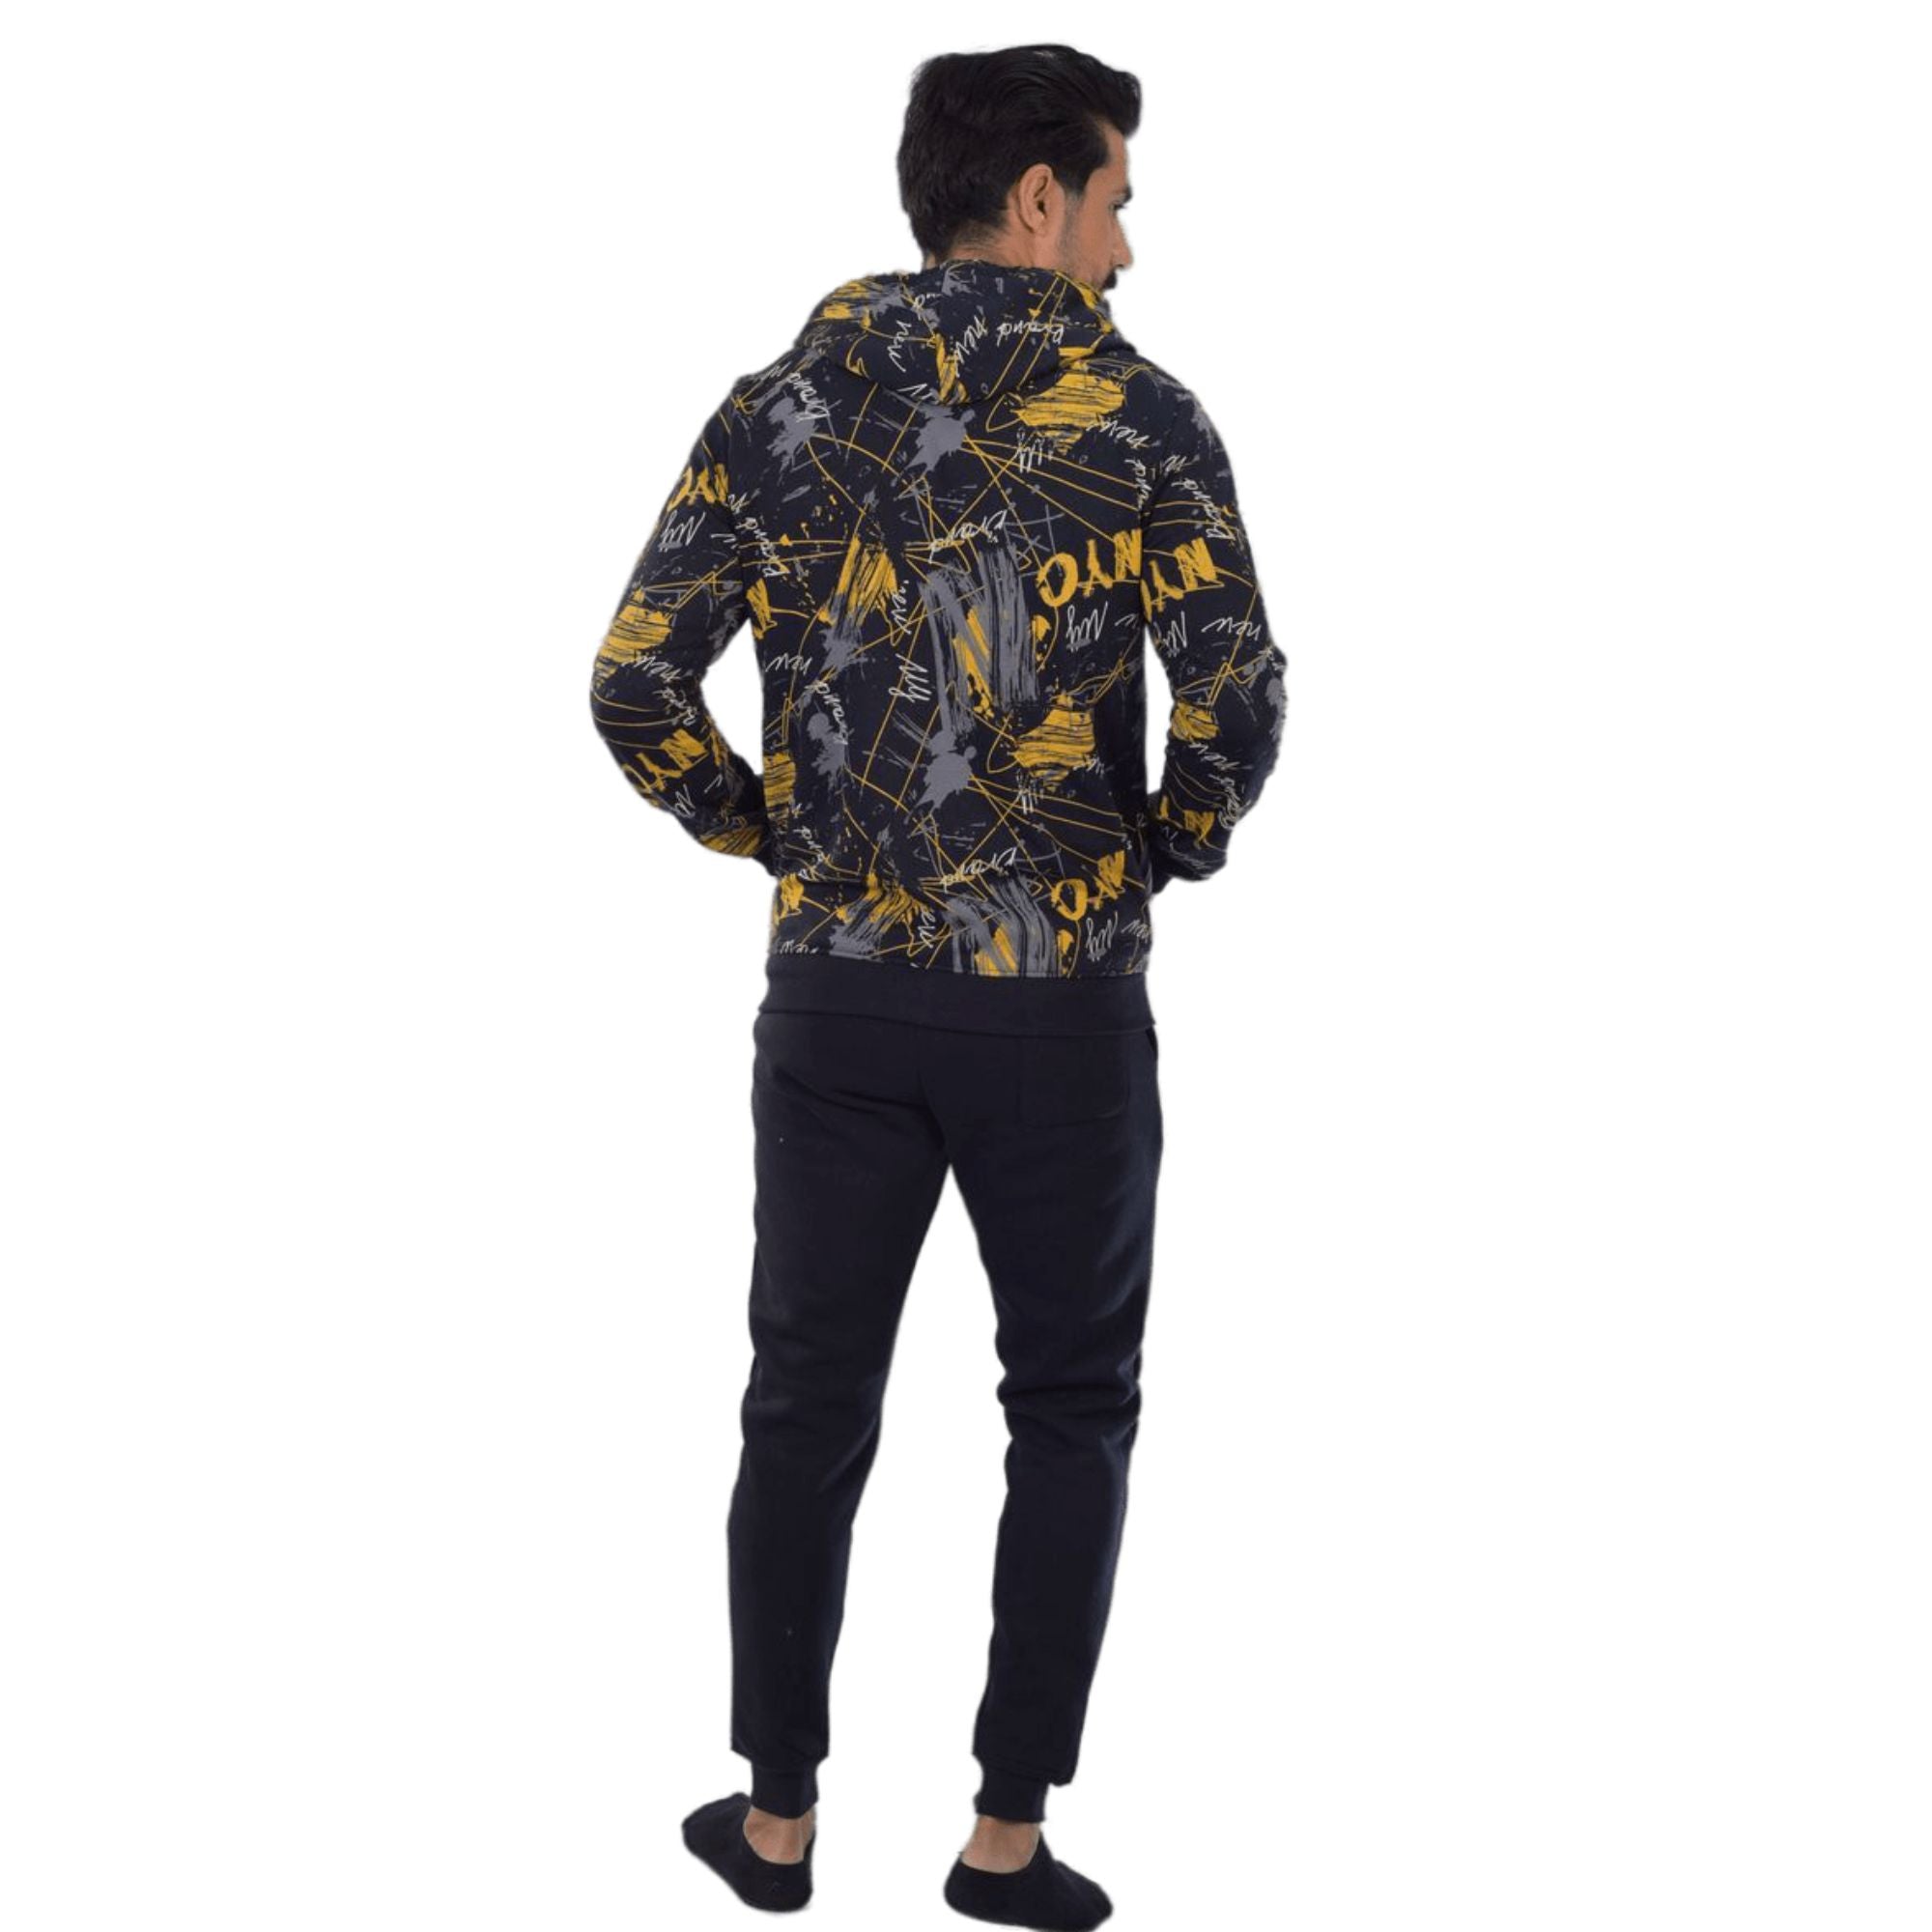 Men's Black Digital Printed Winter Hoodie - Modern and Warm Loungewear